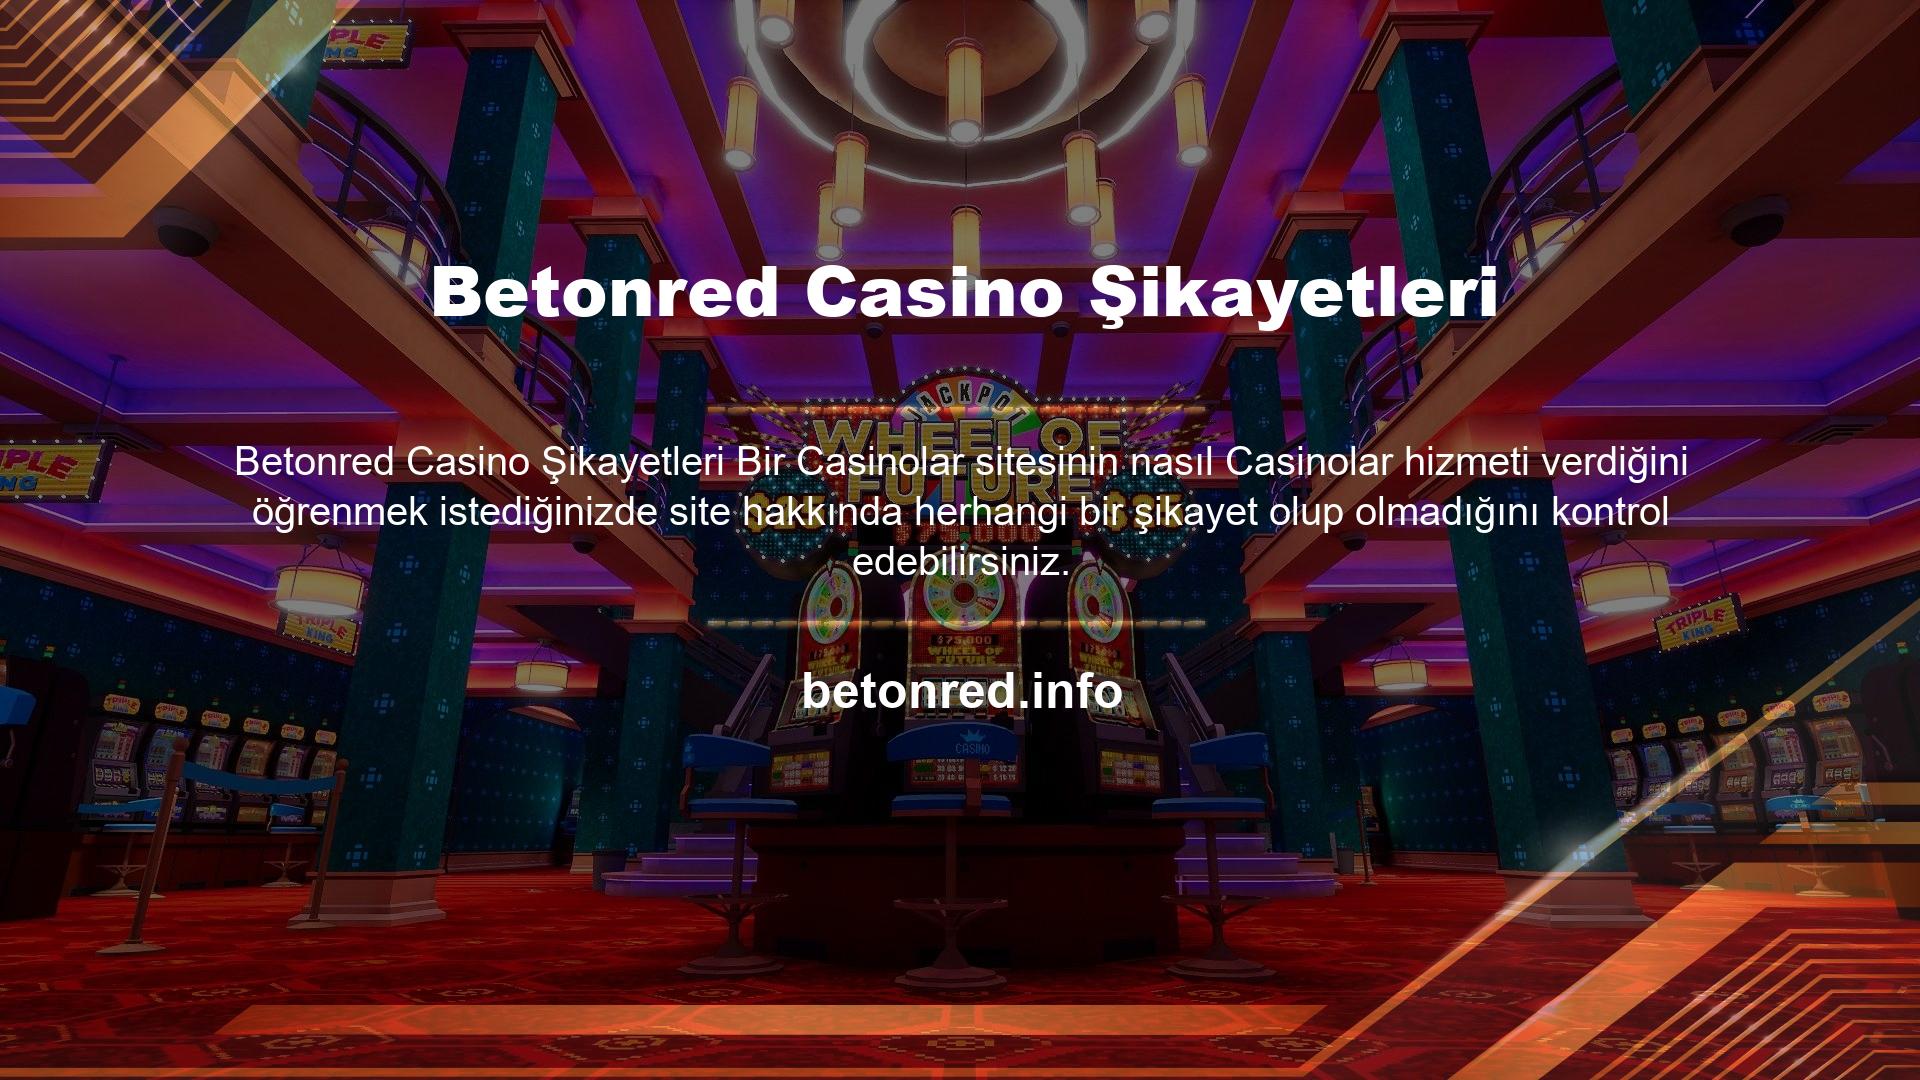 Betonred Casino'nun şikayet inceleme aşamasında, Casino sitesinin Casinolarda kaldıkları süre boyunca herhangi bir şikayet almadığını gördük